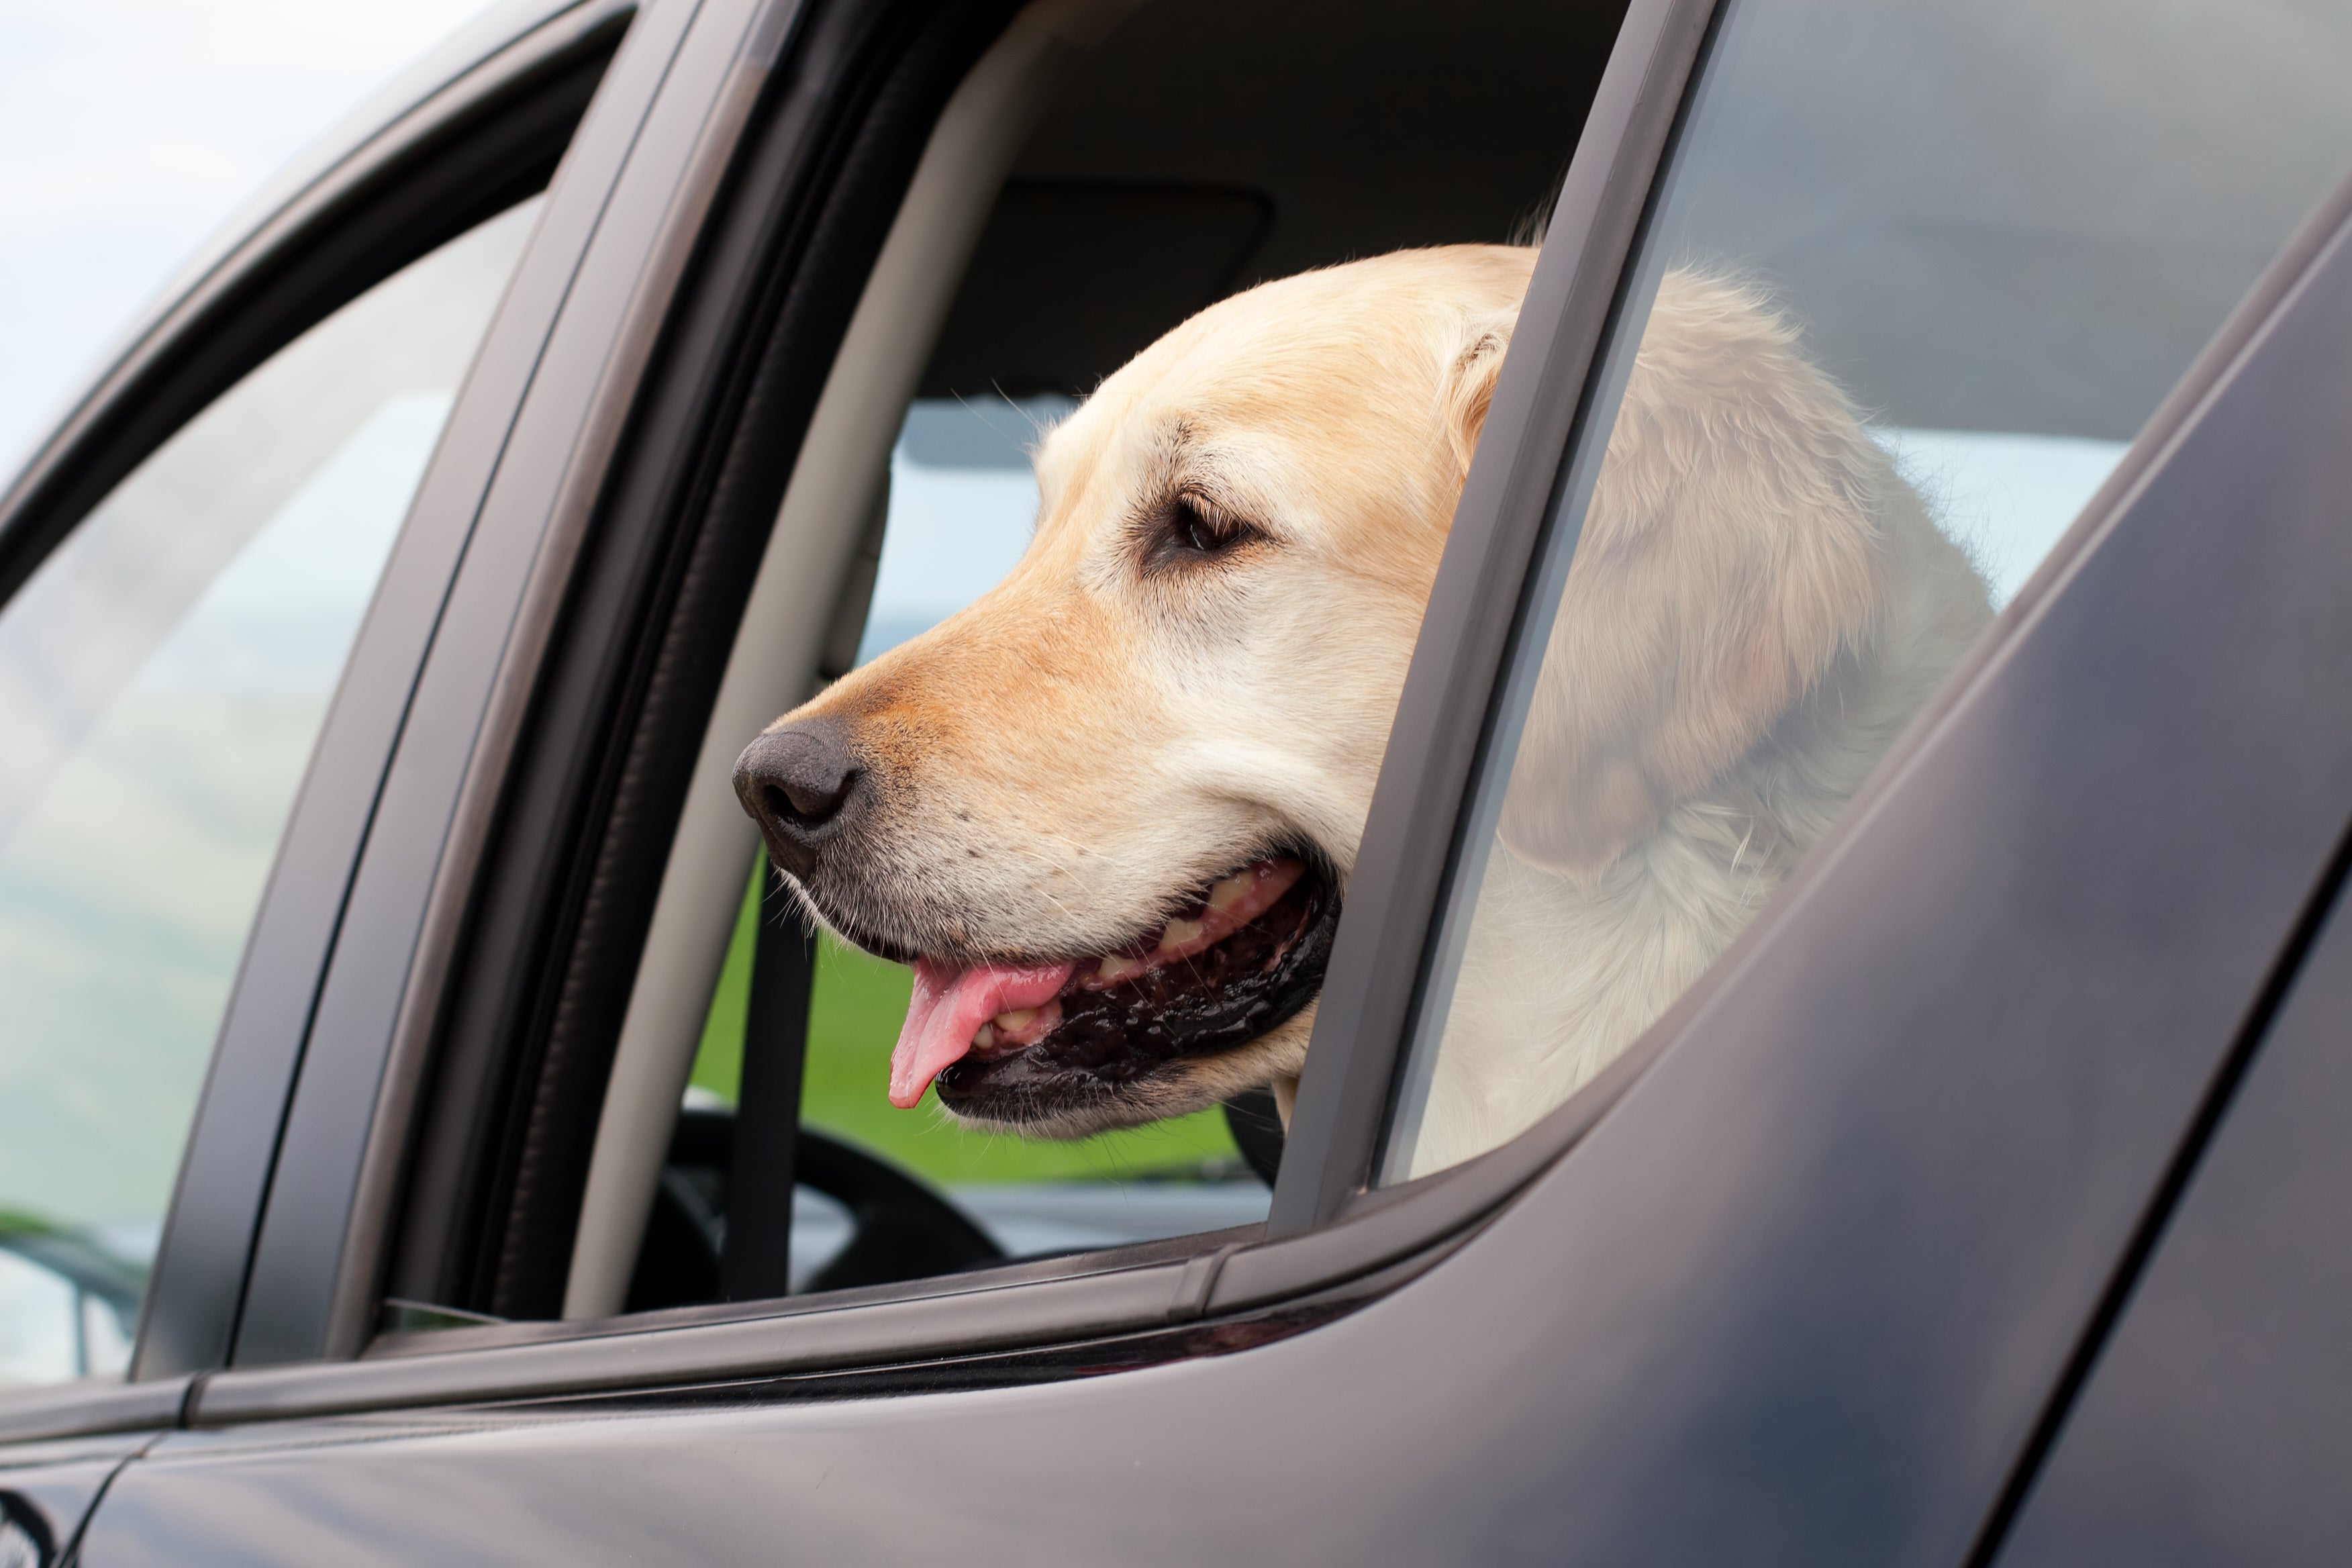 What to do if you see a dog in a car on a hot day